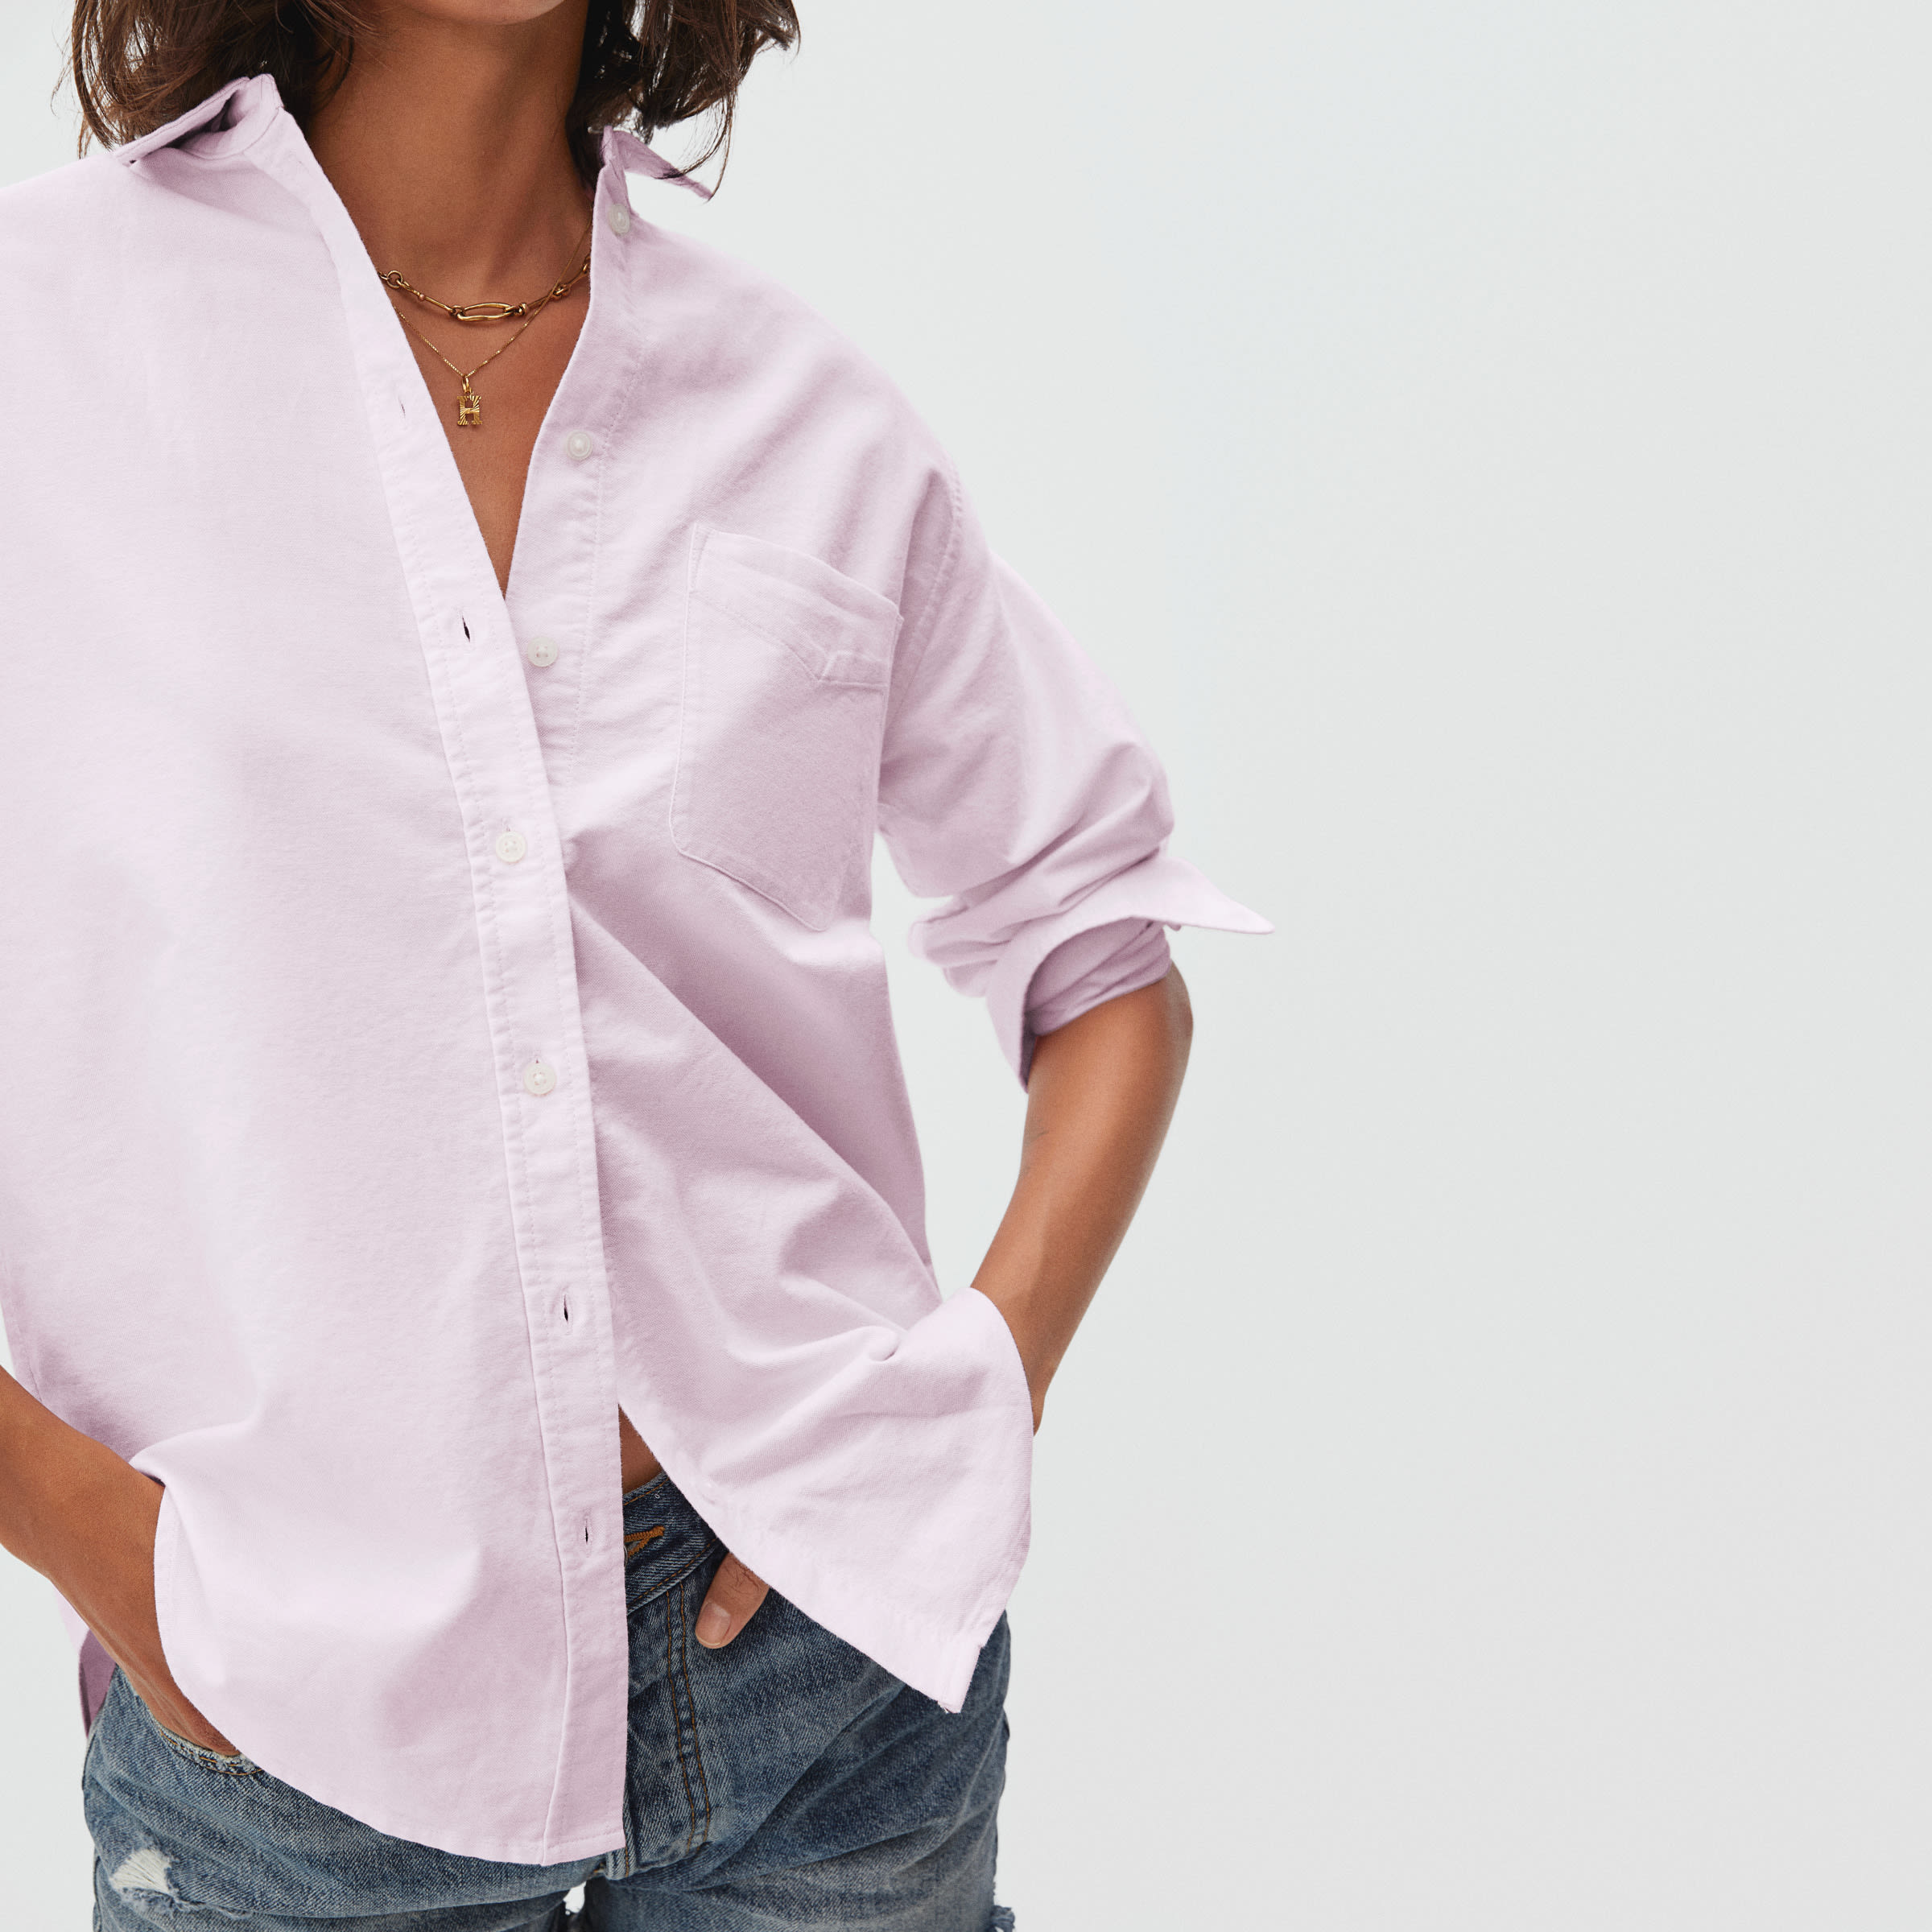 pink button up shirt womens